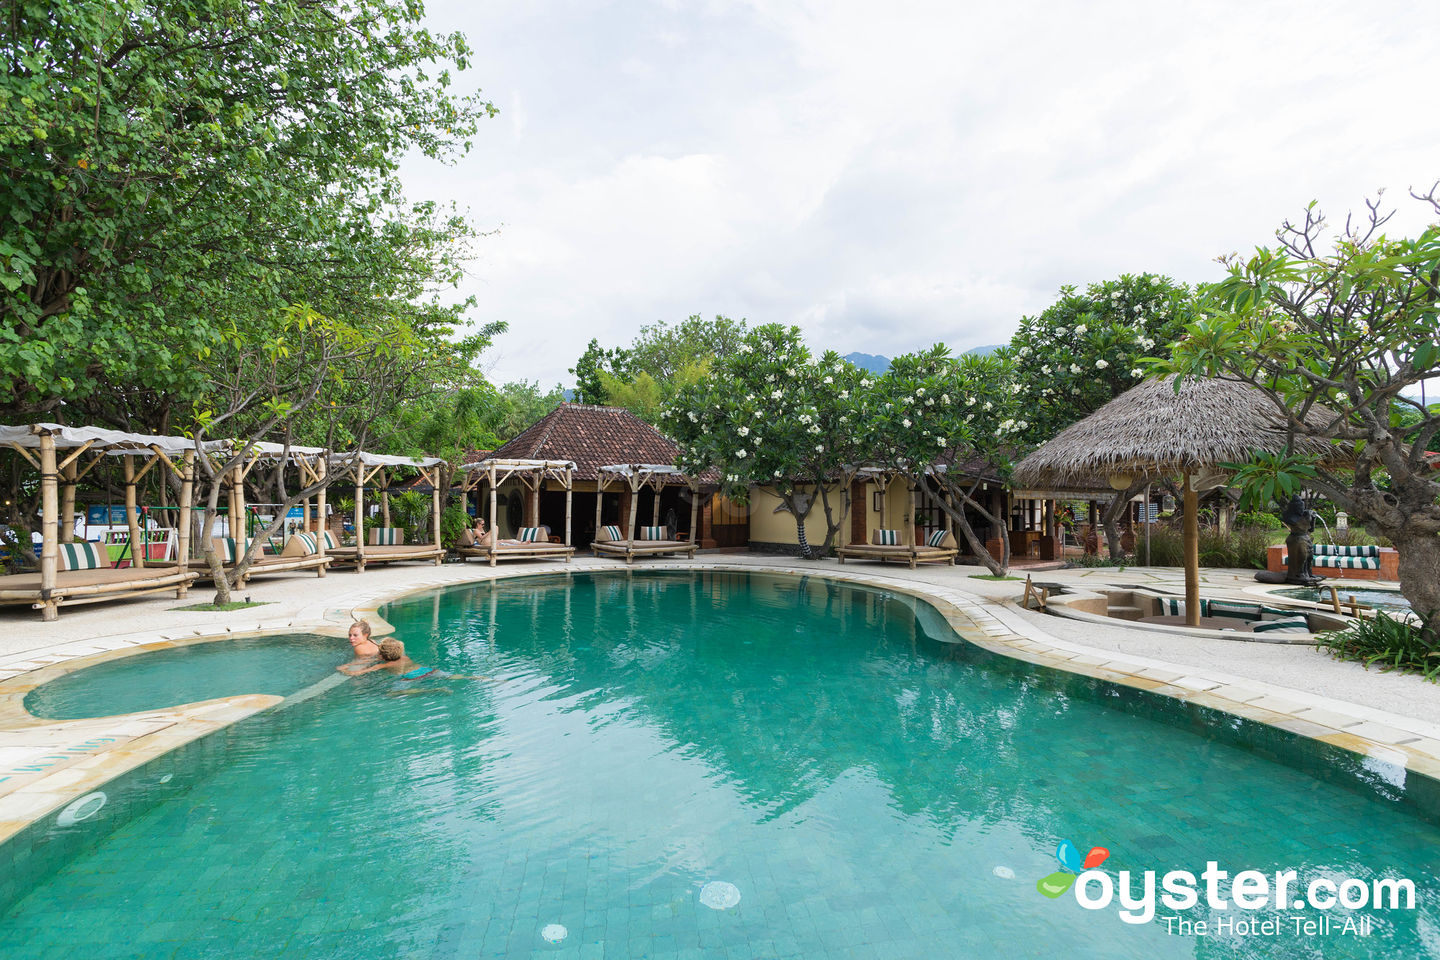  Taman Sari Bali  Resort Spa Review What To REALLY Expect 